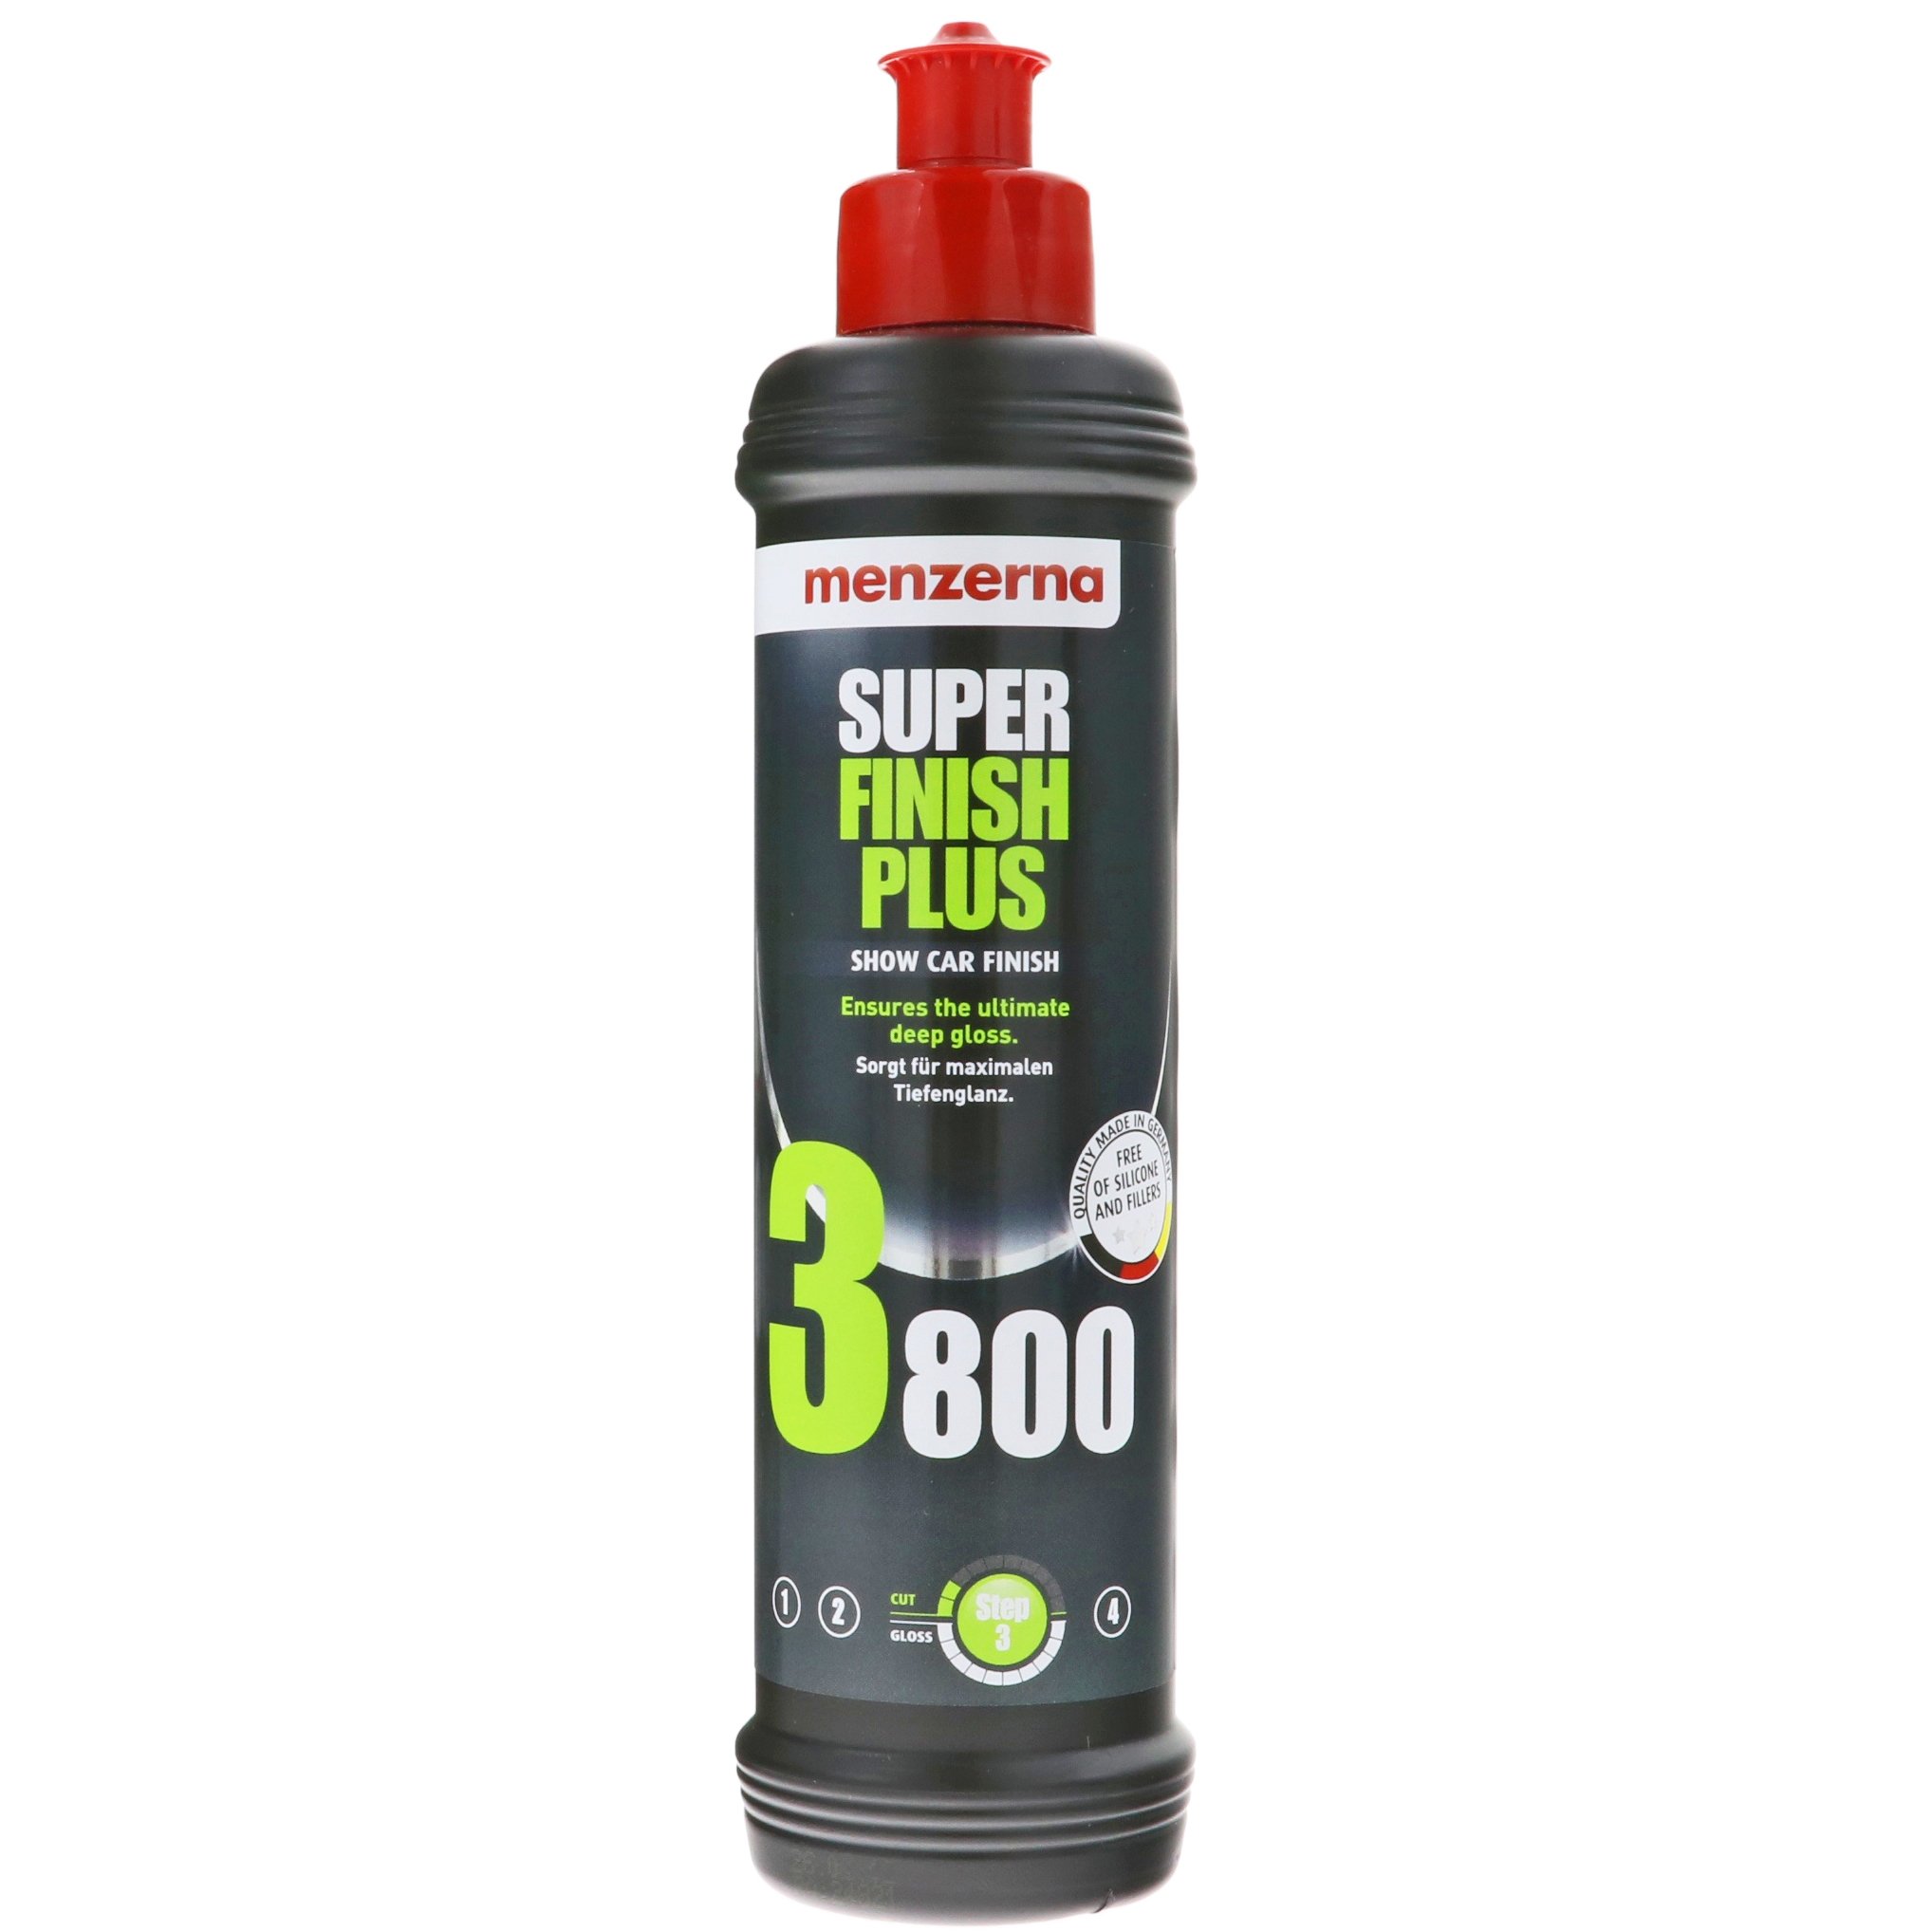 Super Finish Plus 3800 - 250ml